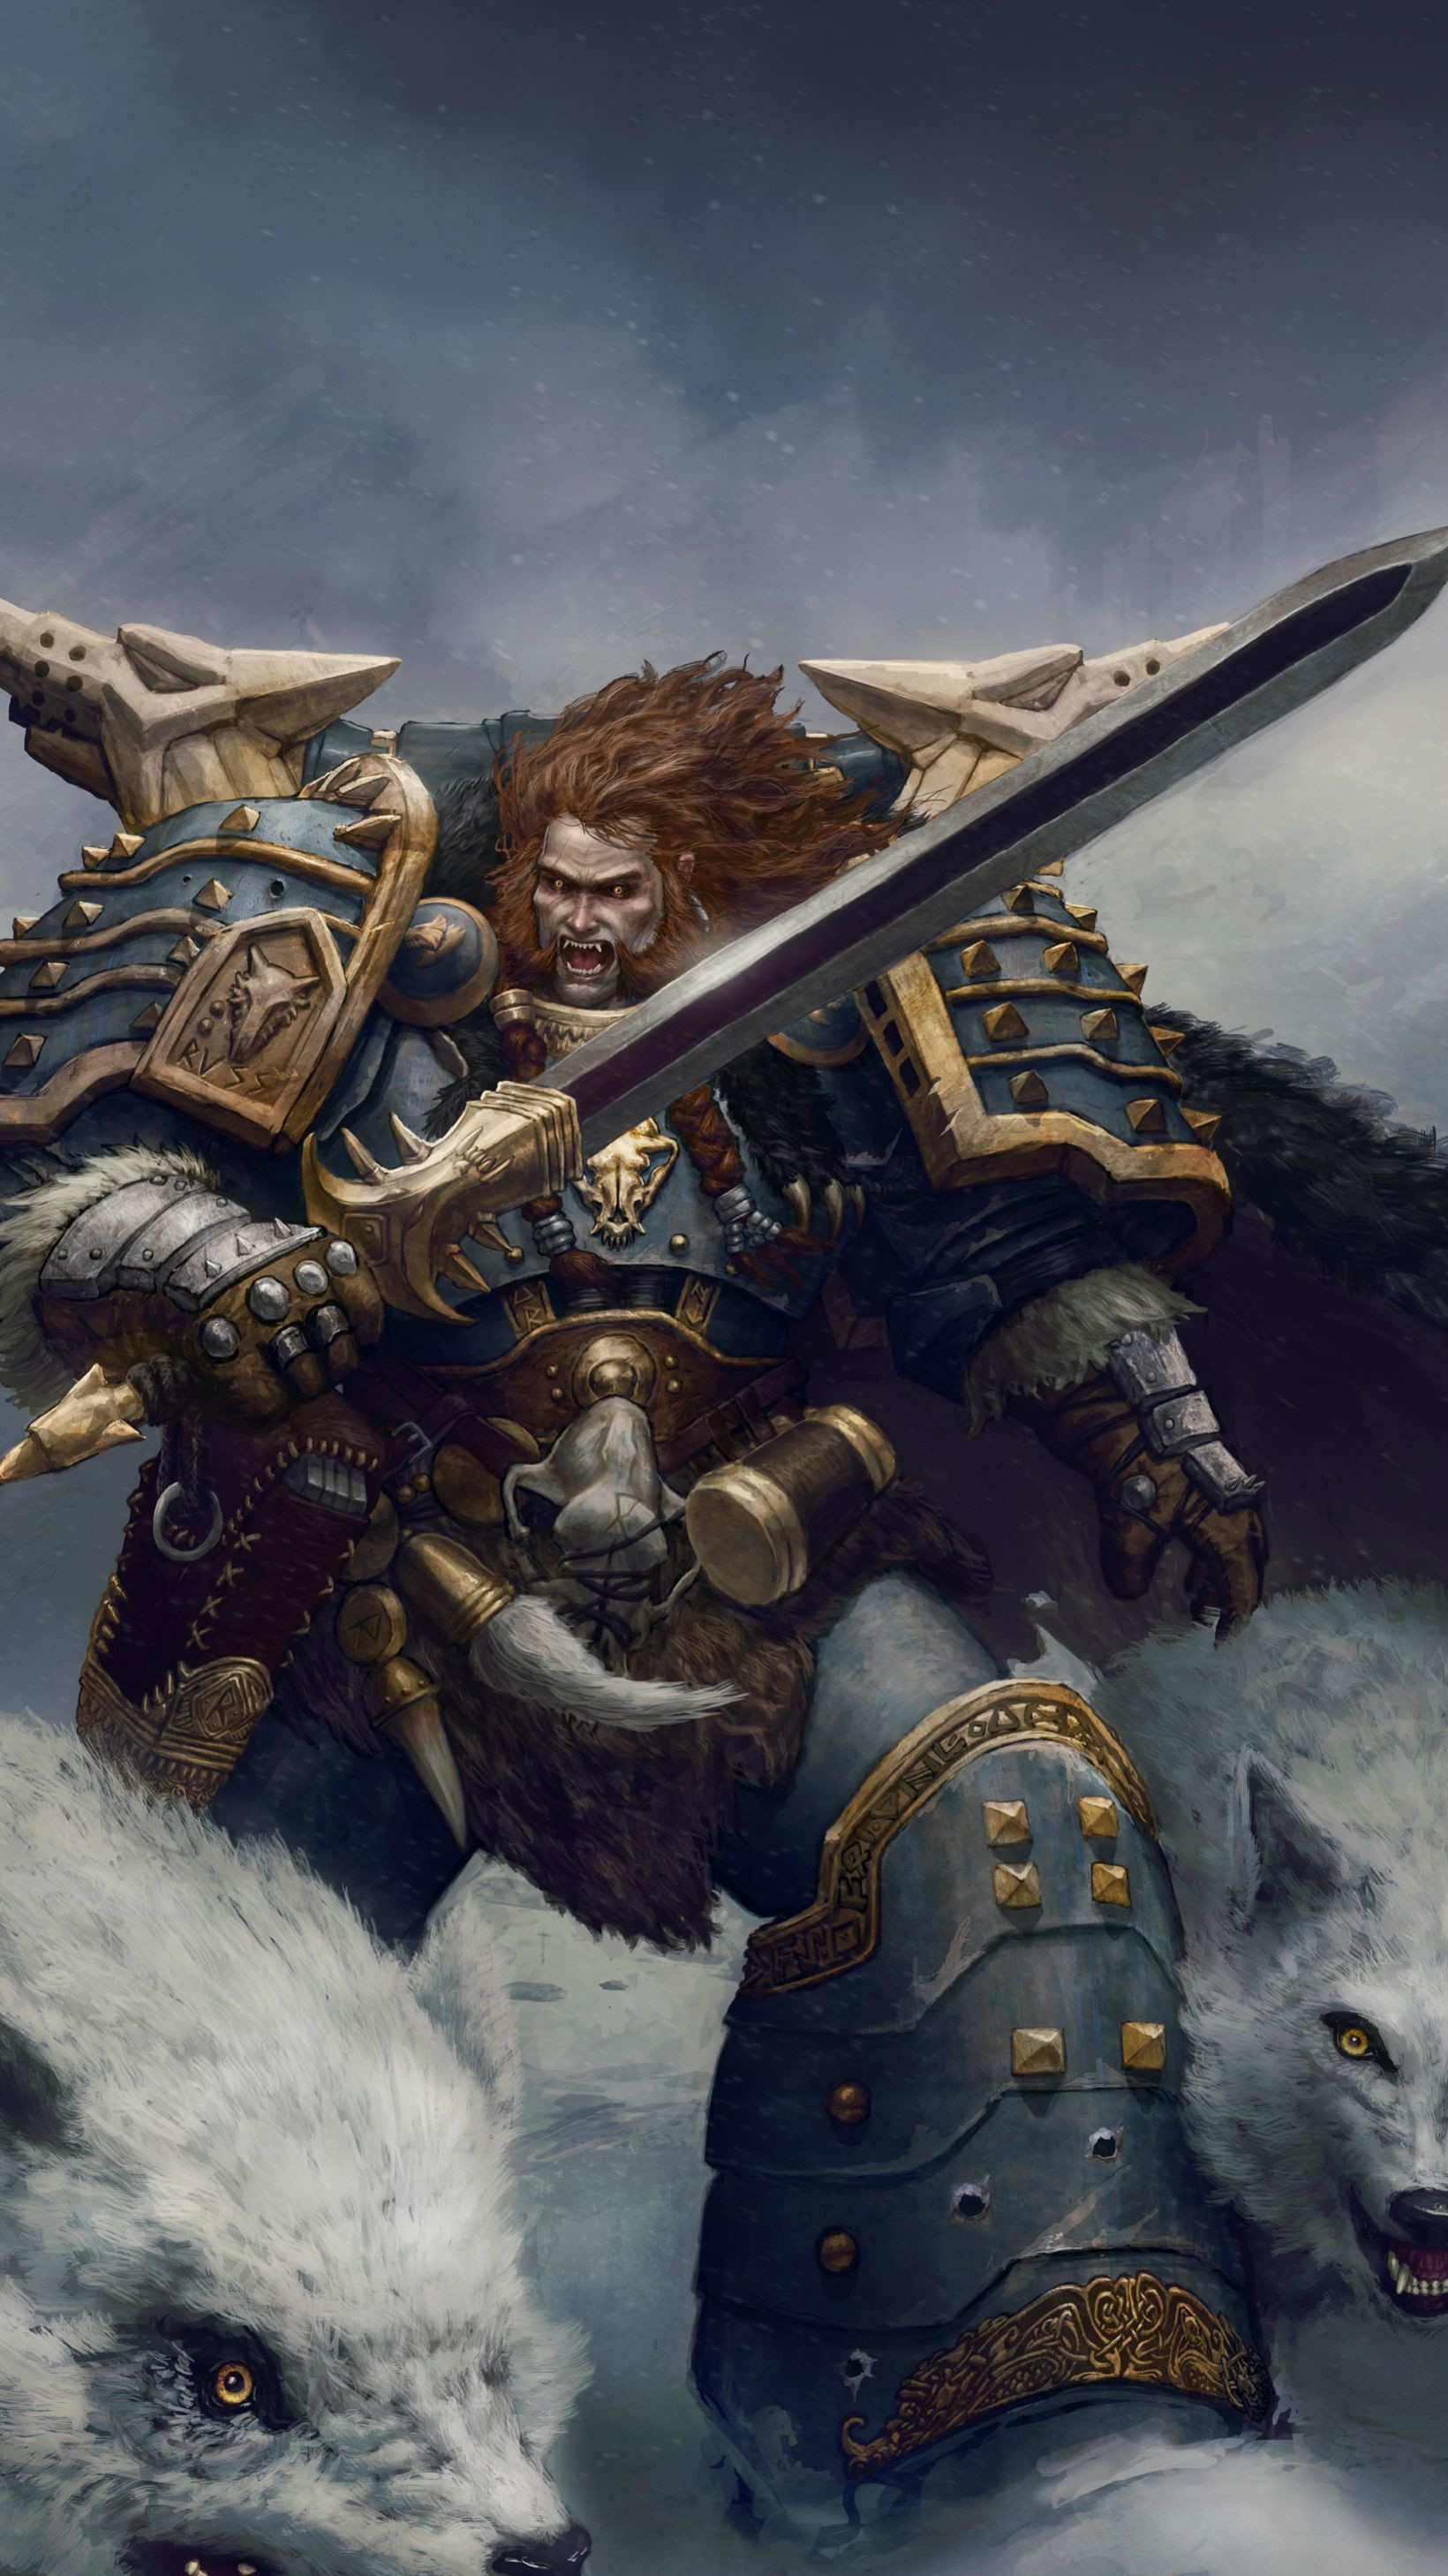 warhammer 40000 wallpaper,cg artwork,mythology,fictional character,warlord,illustration